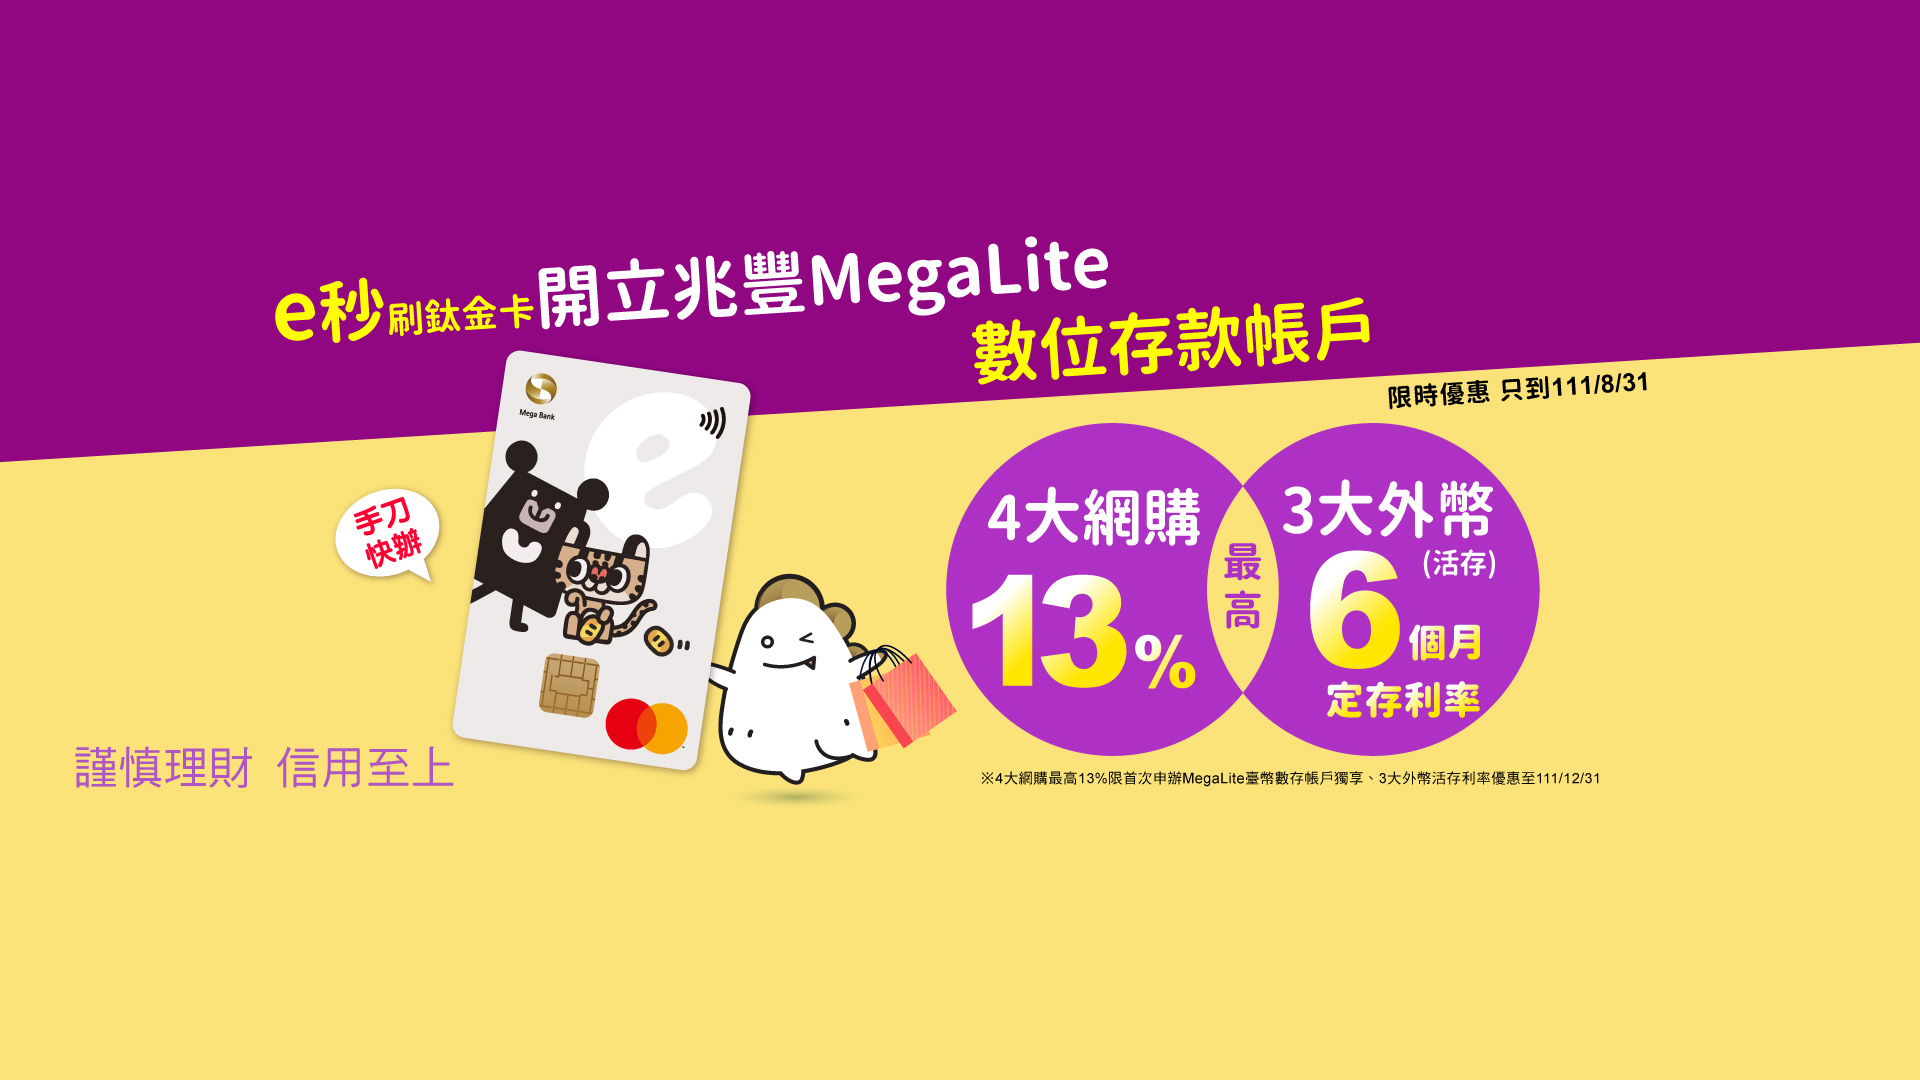 Megalite網購活動